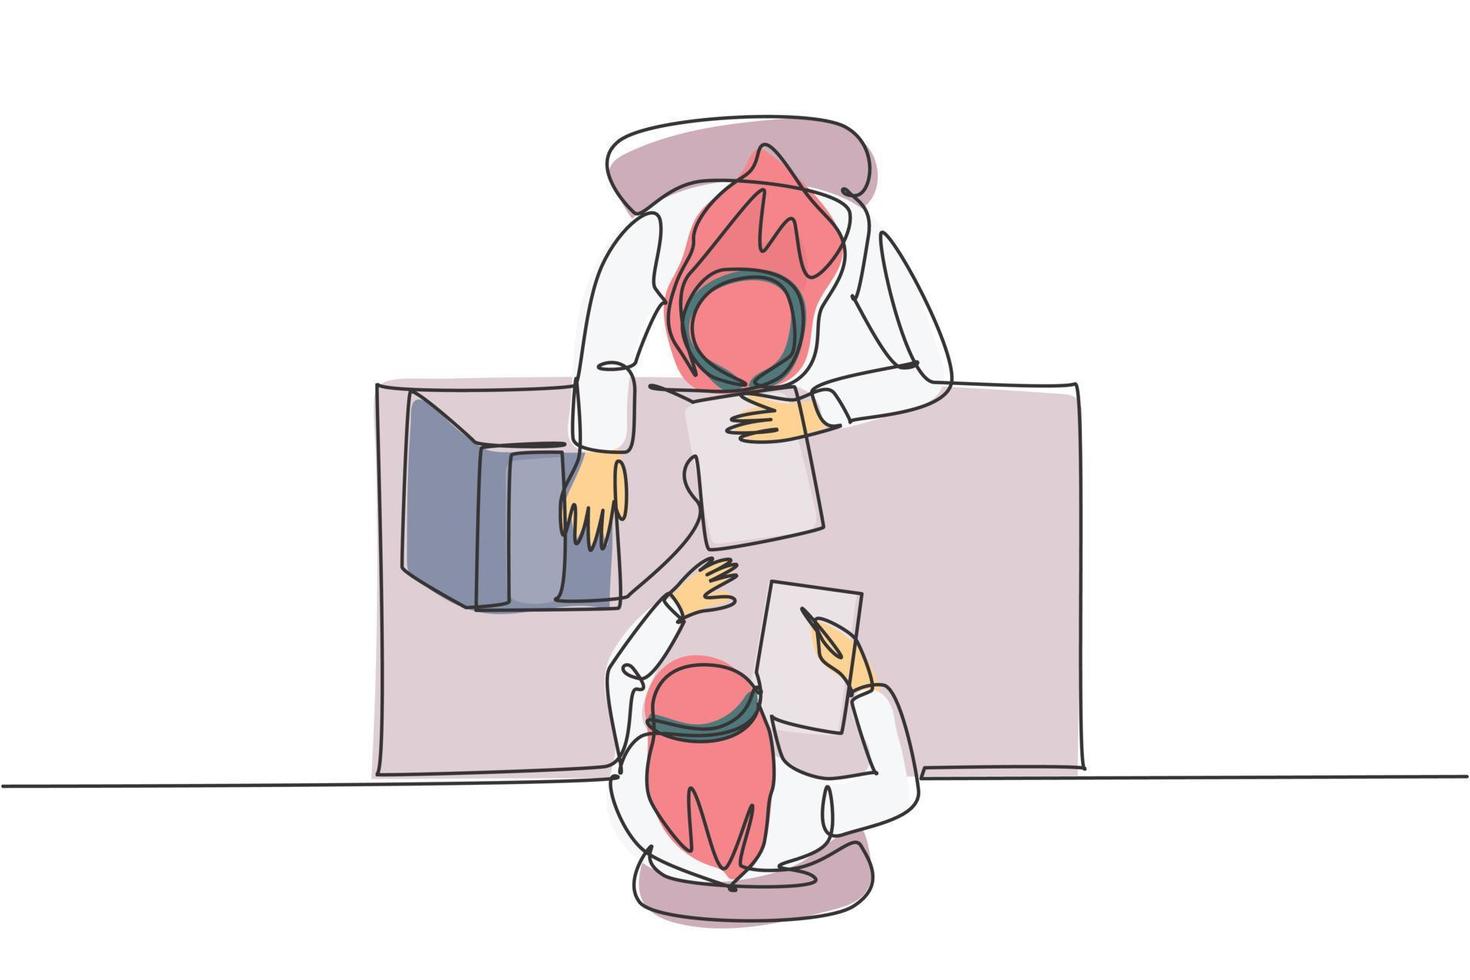 un unico disegno a tratteggio di un giovane uomo d'affari musulmano felice che discute di contratto con un collega, dalla vista dall'alto. foulard di stoffa arabia saudita, thobe. illustrazione vettoriale di disegno di disegno di linea continua